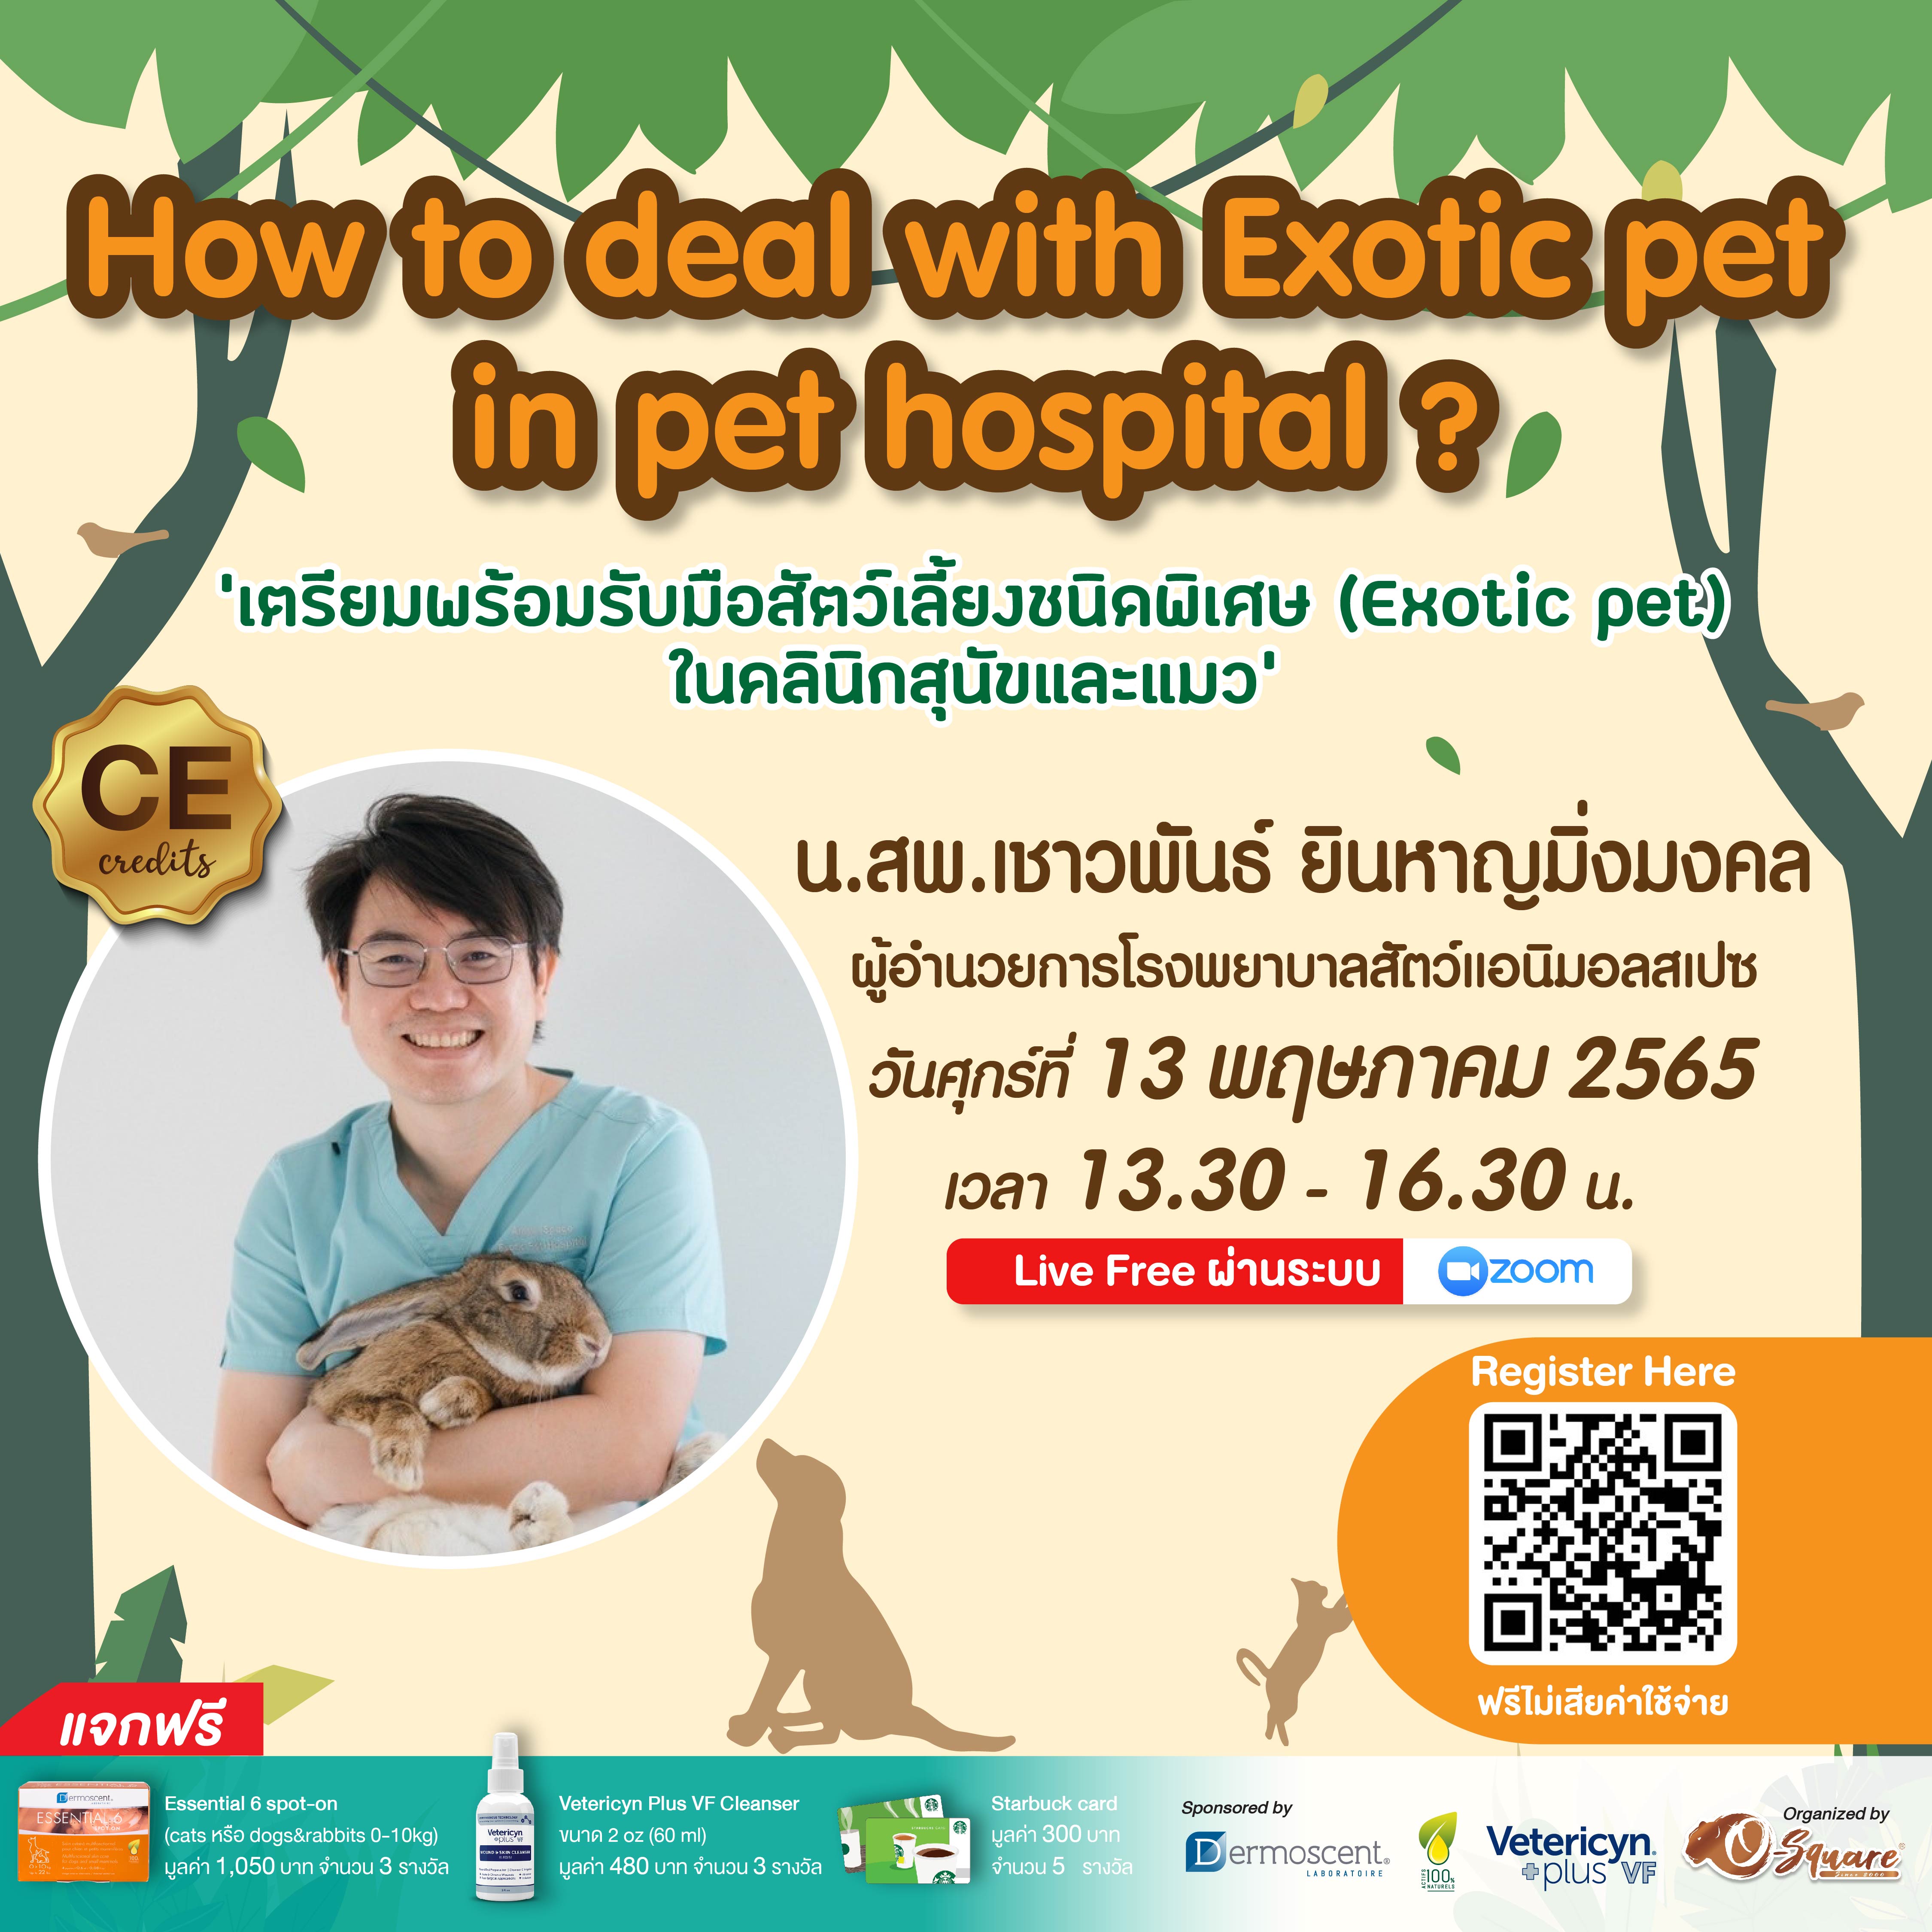 งานสัมมนาออนไลน์ “How to deal with exotic pet in pet hospital?”